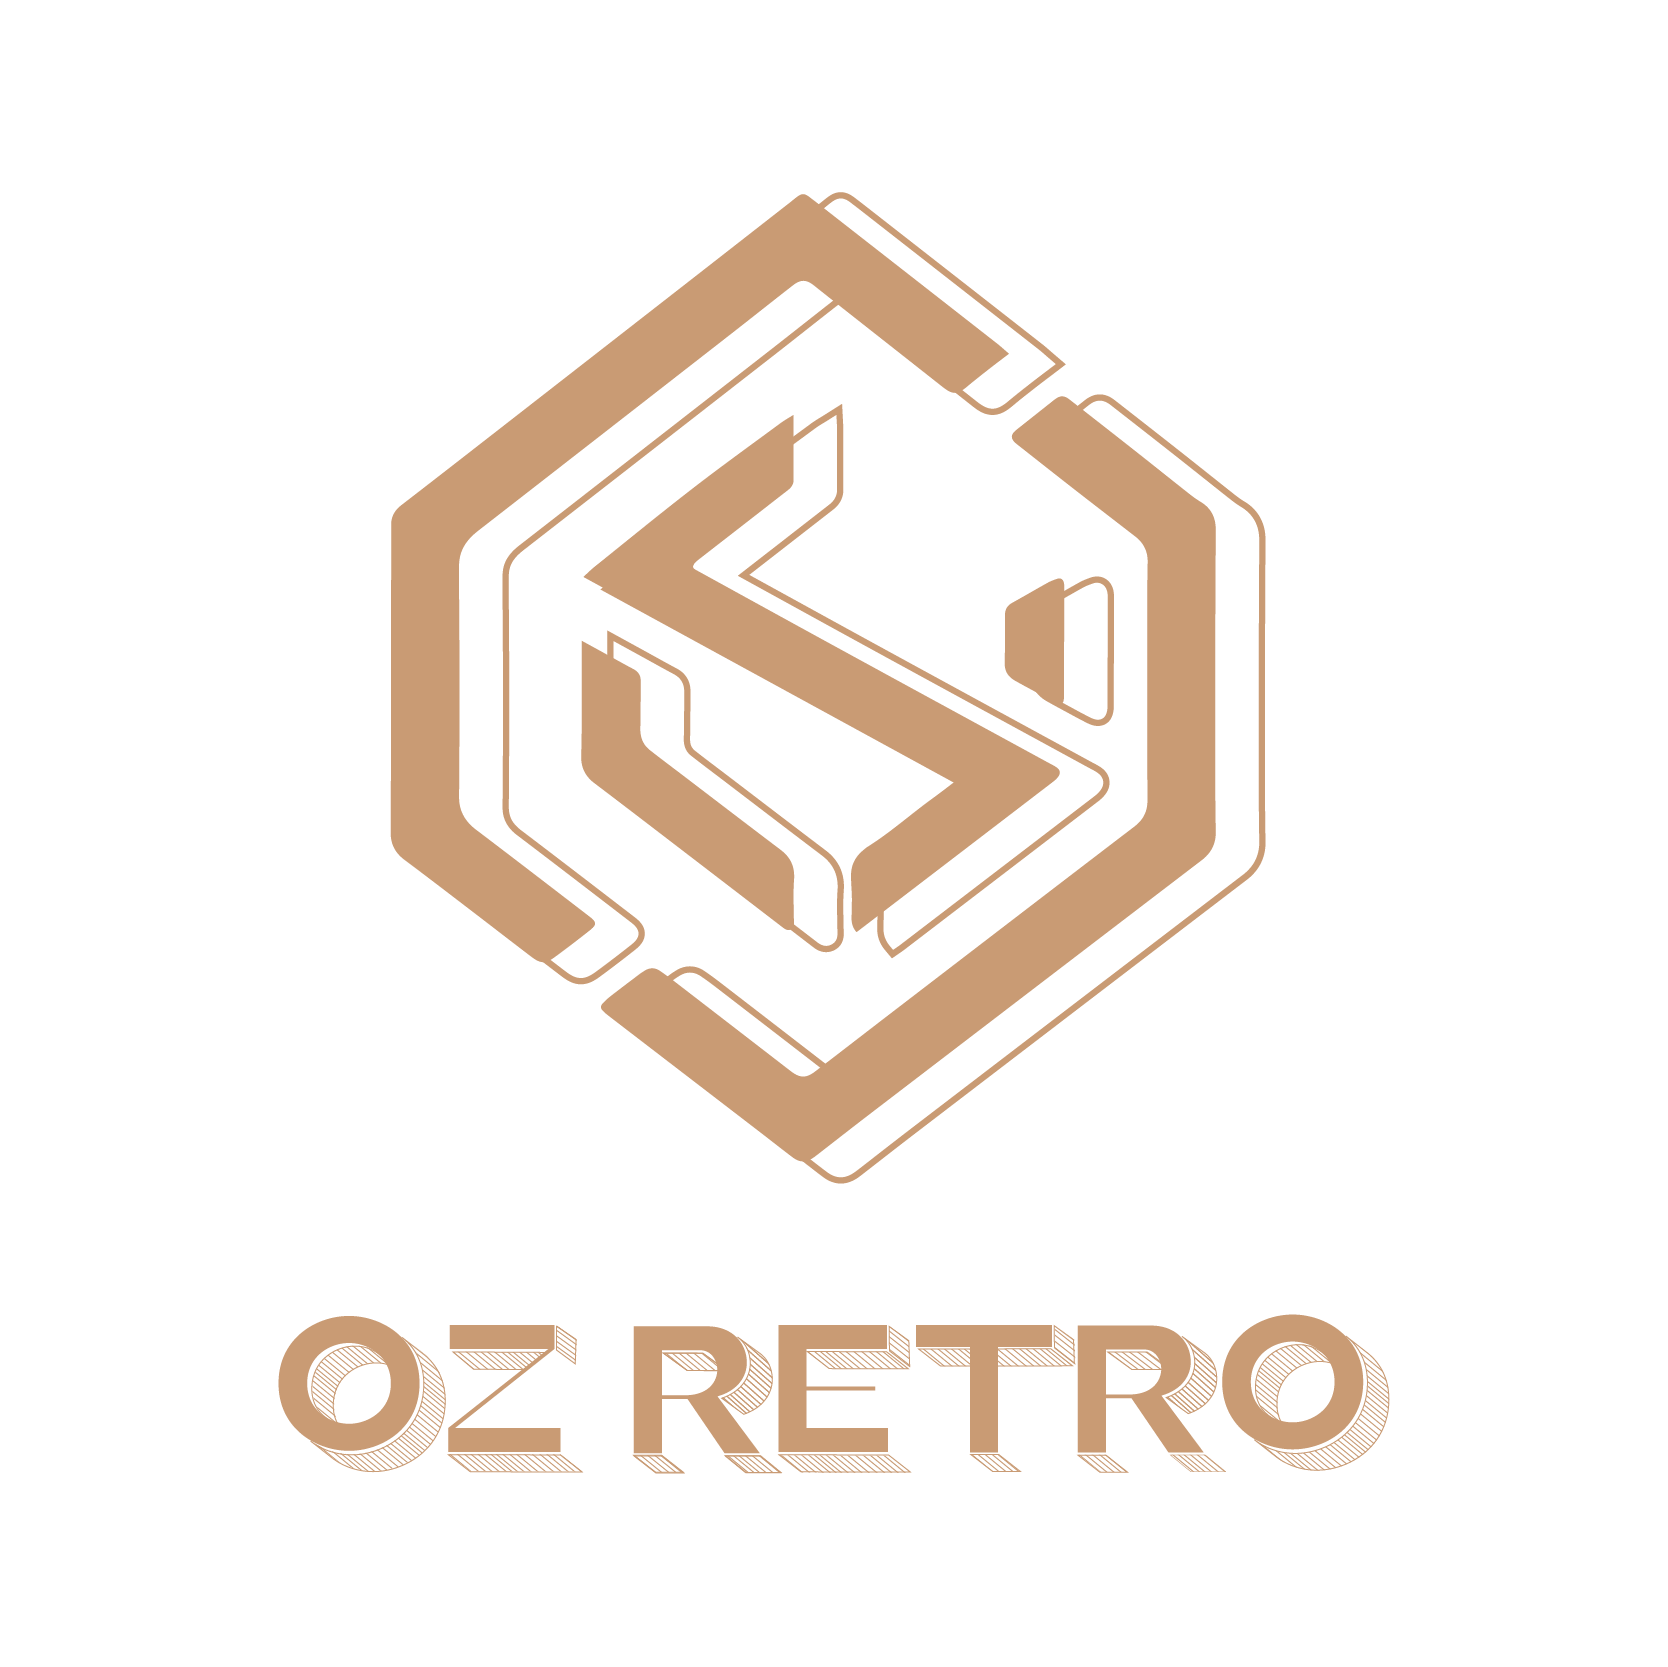 OZ RETRO JOINT STOCK COMPANY